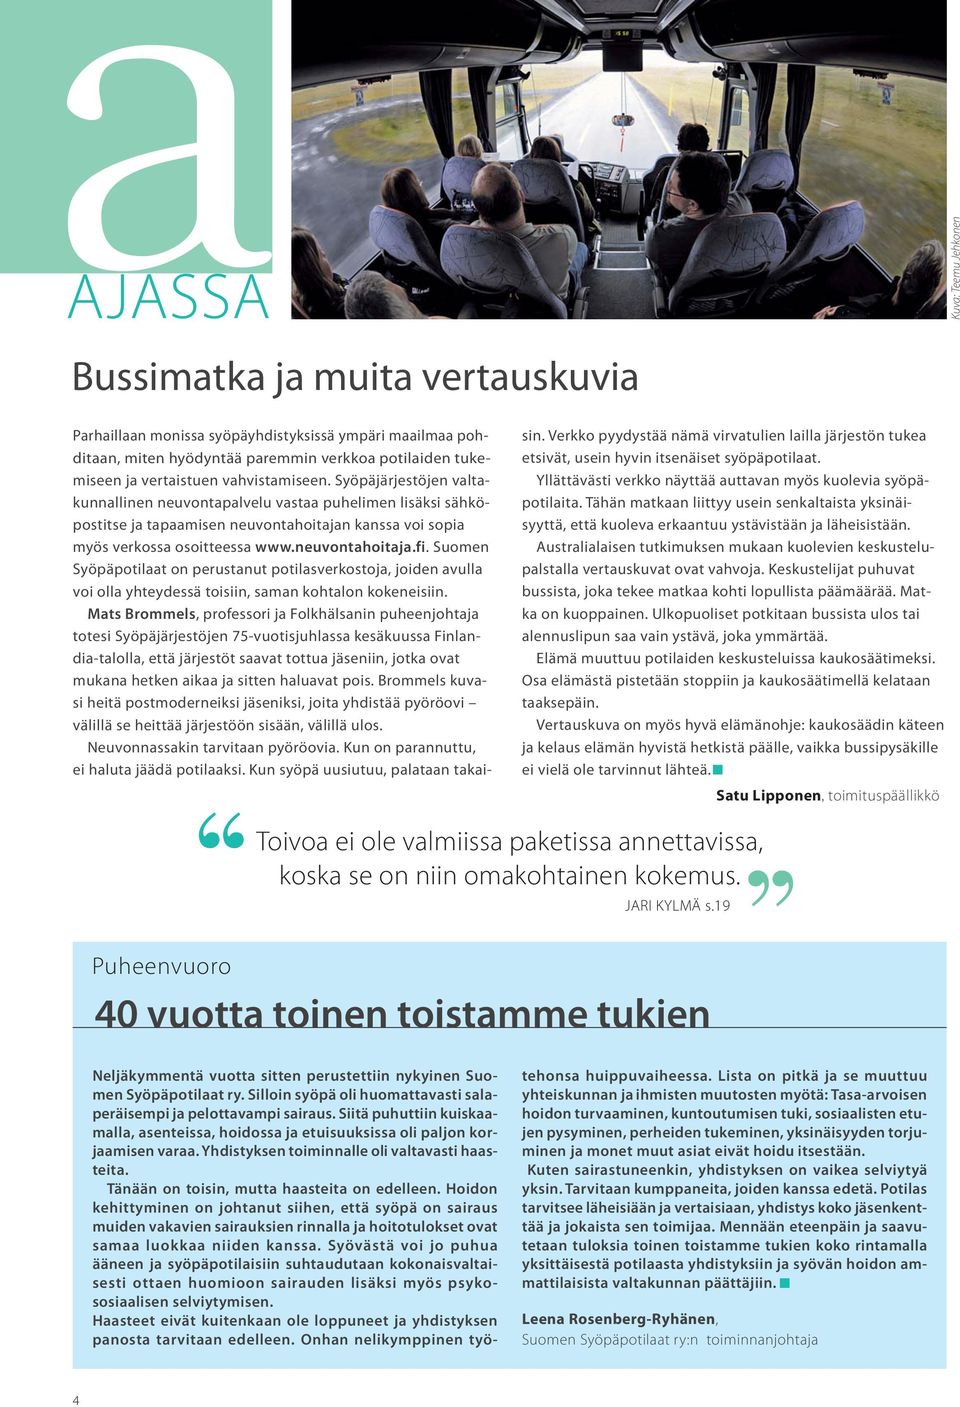 Suomen Syöpäpotilaat on perustanut potilasverkostoja, joiden avulla voi olla yhteydessä toisiin, saman kohtalon kokeneisiin.